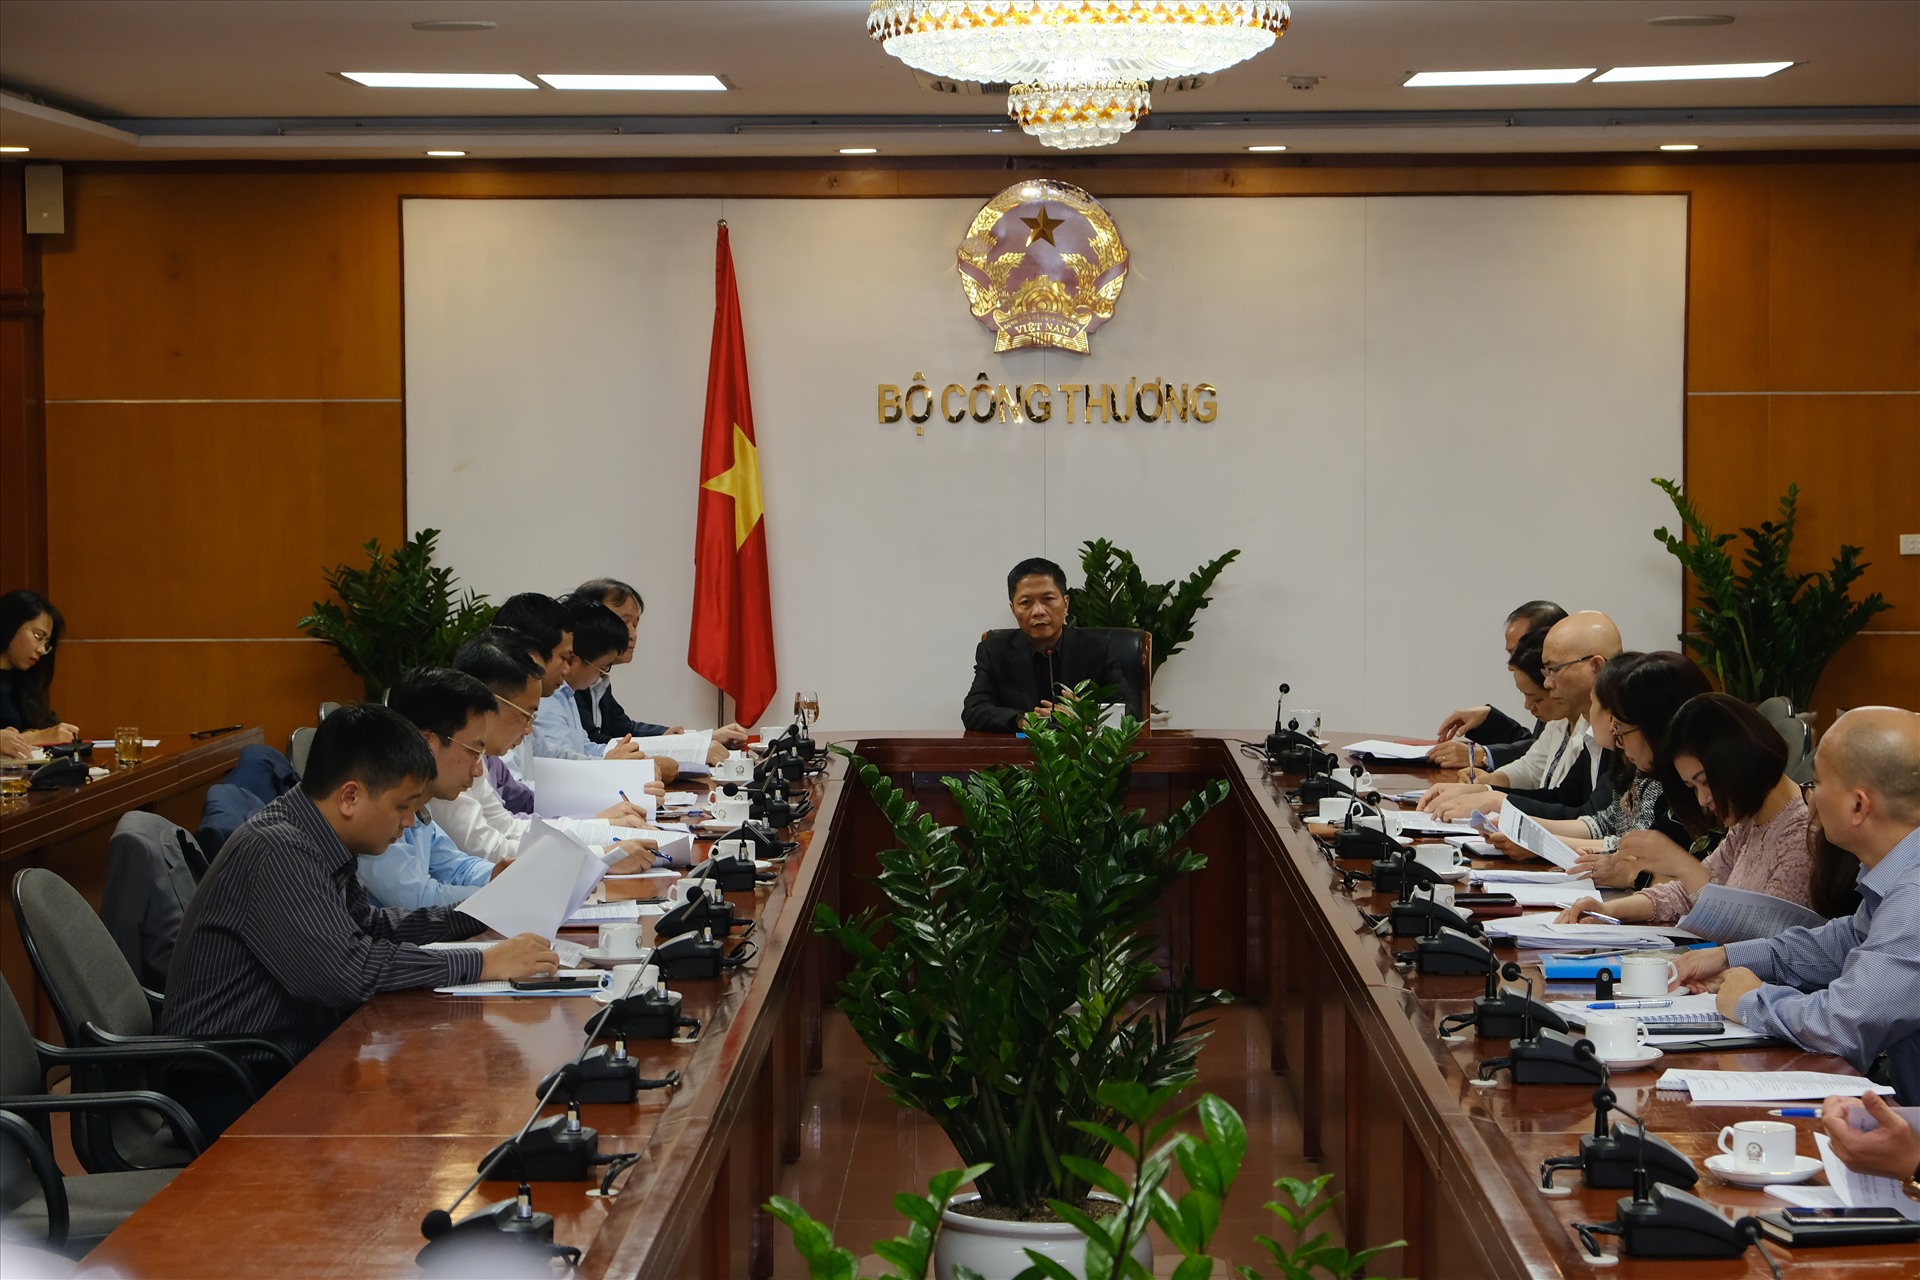 Cuộc họp giữa Bộ trưởng và các đơn vị trong bộ